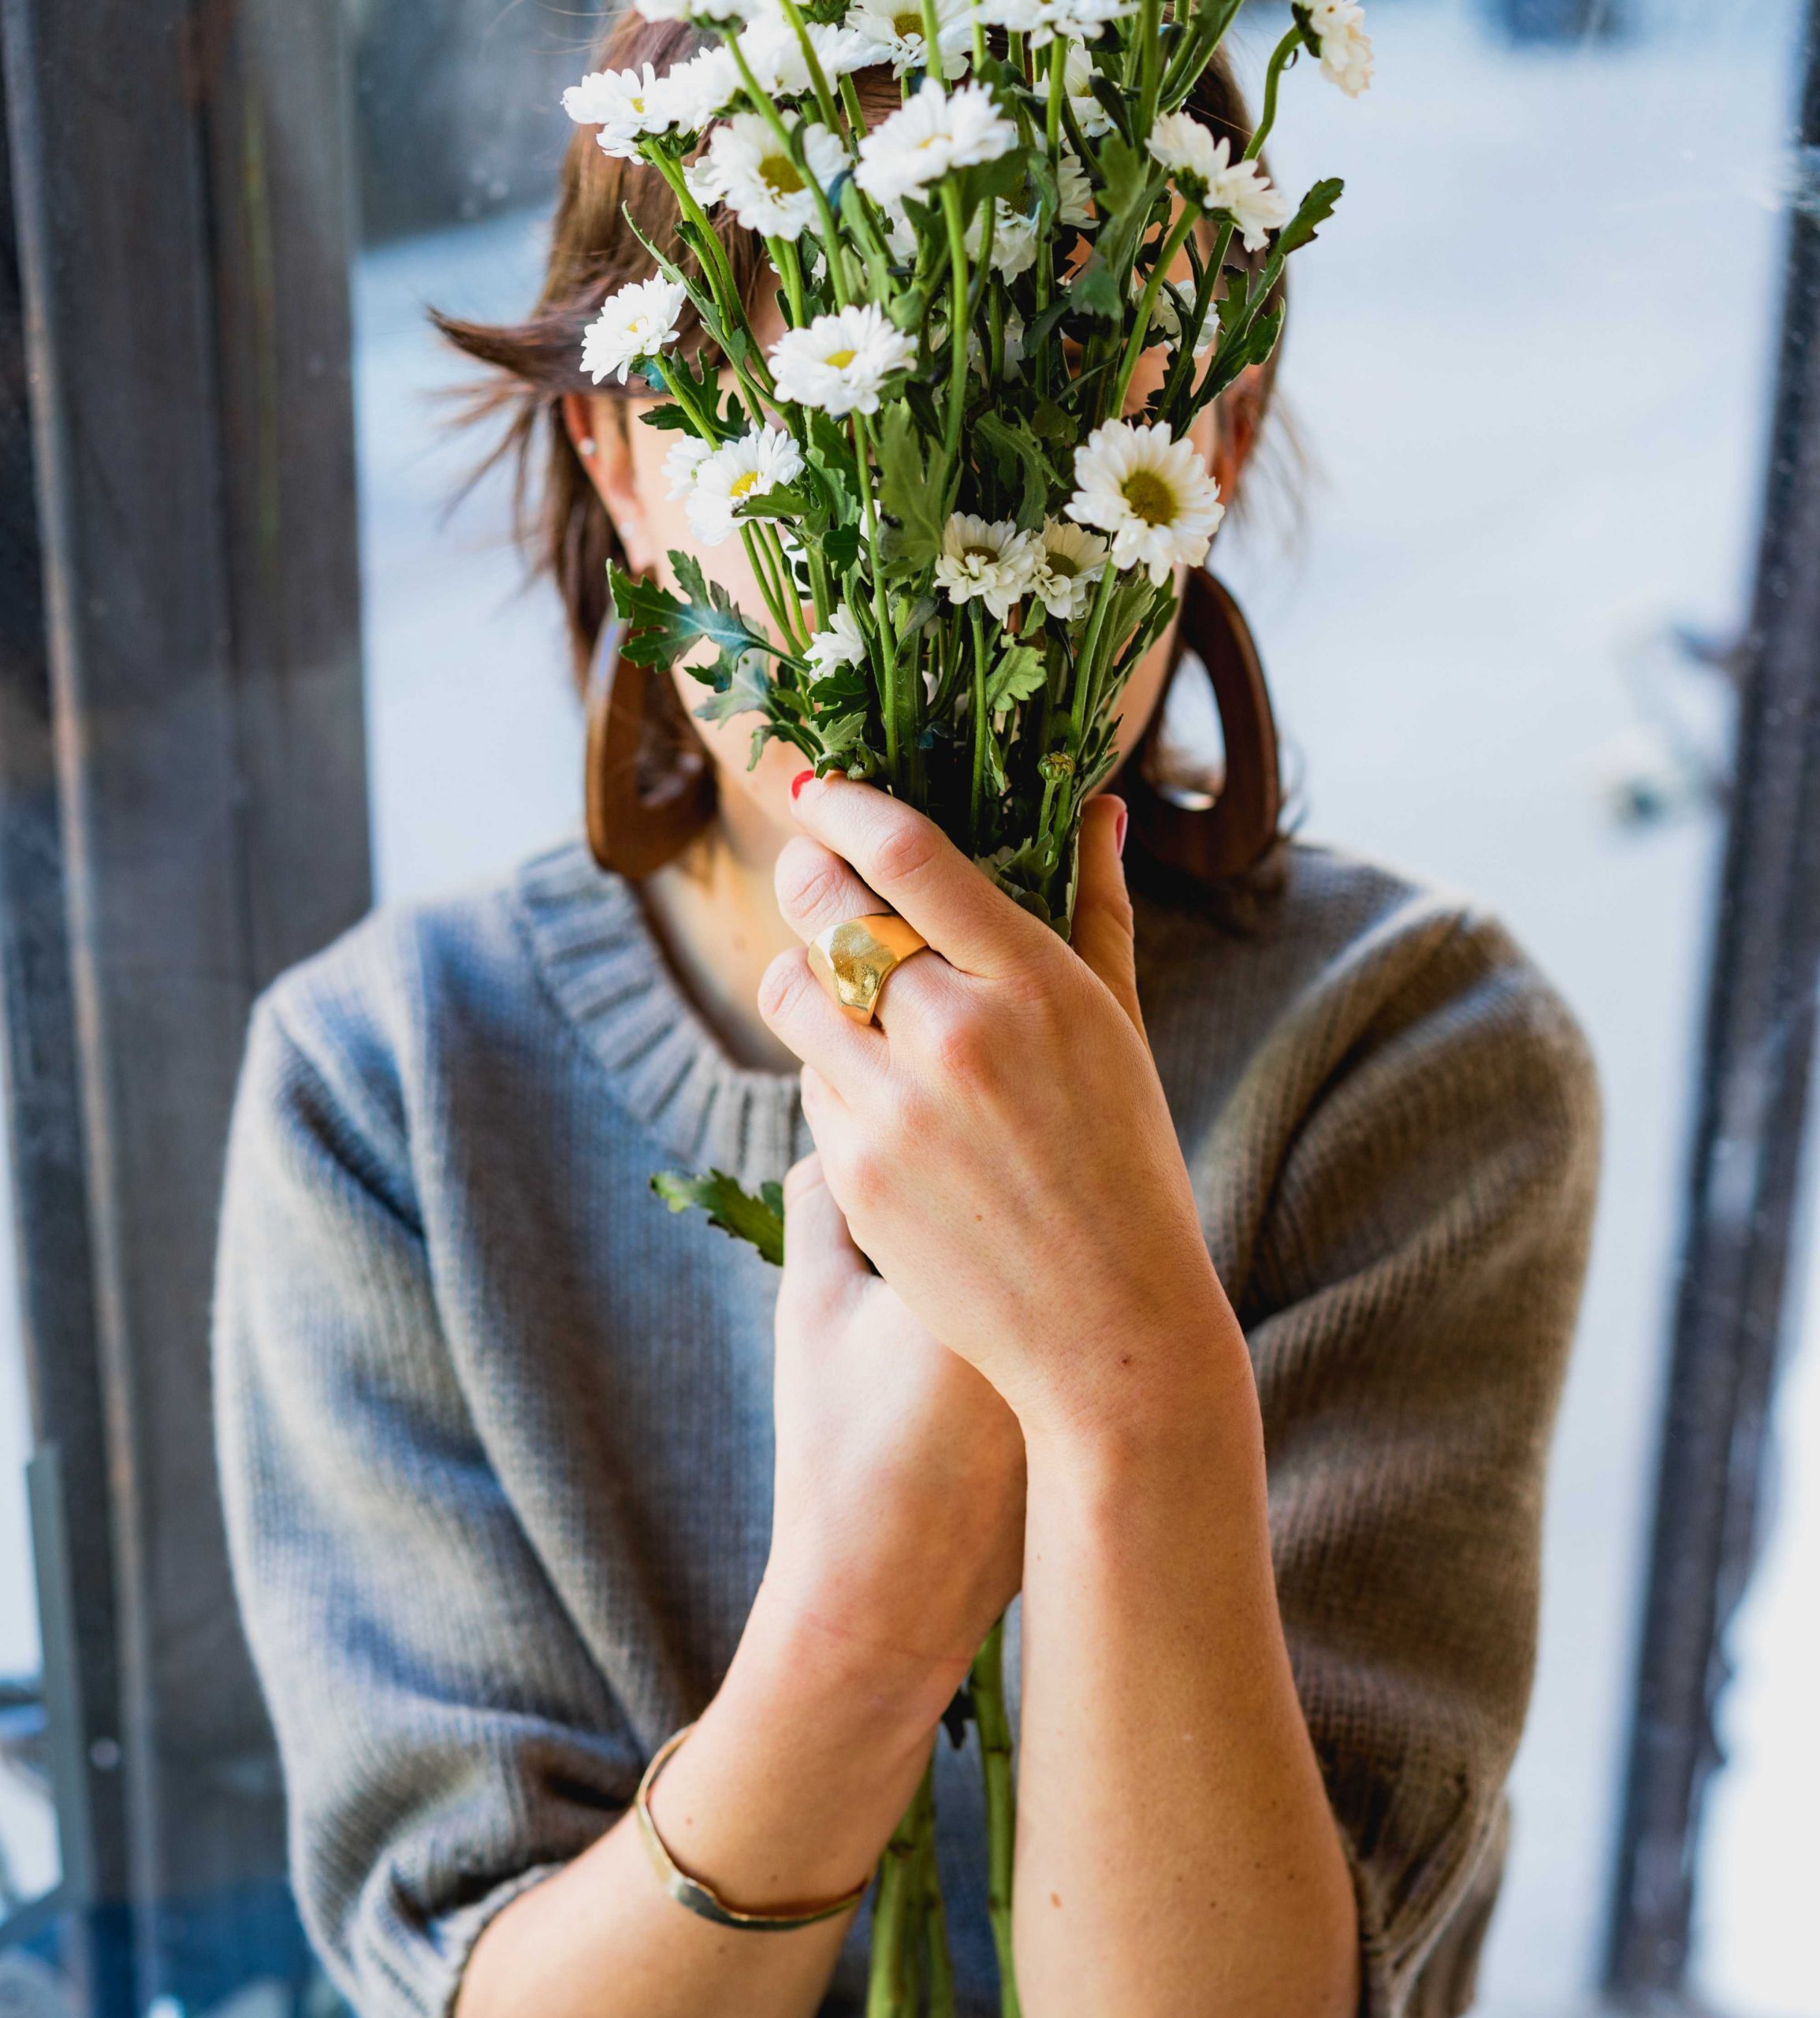 ผู้หญิงซ่อนใบหน้าของตัวเองหลังช่อดอกไม้